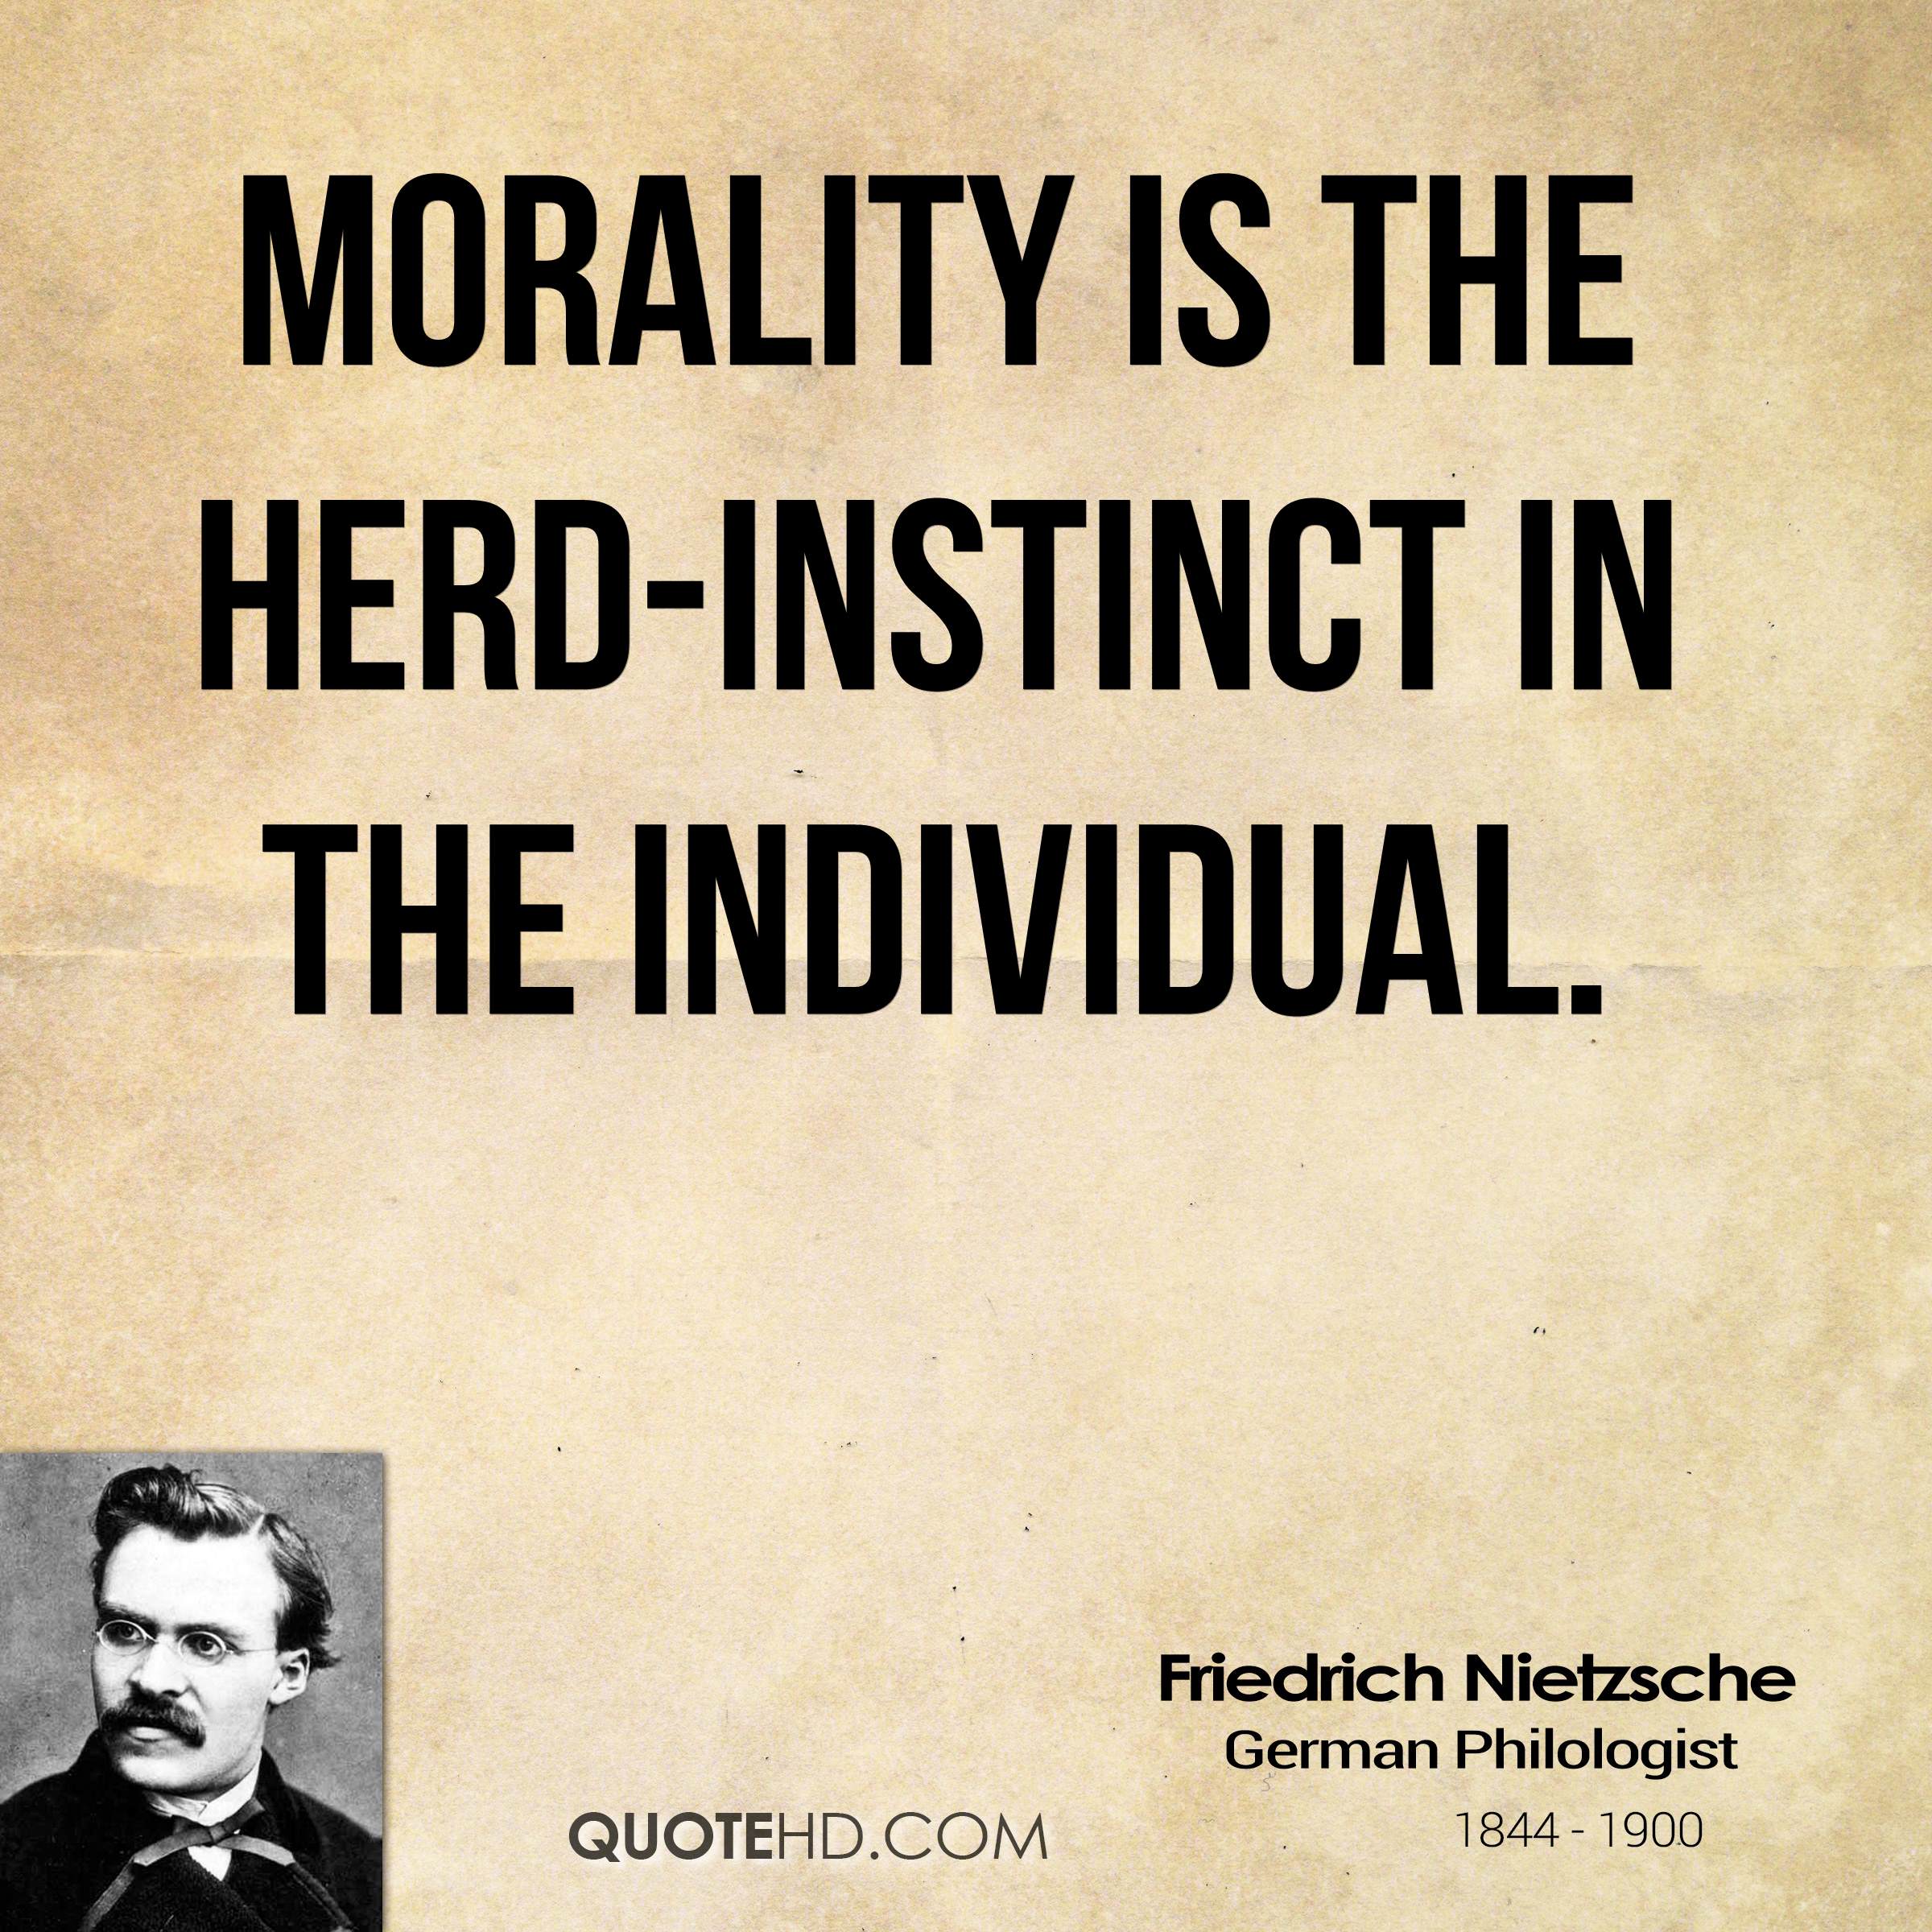 Morality is the herd-instinct in the individual. Friedrich Nietzsche